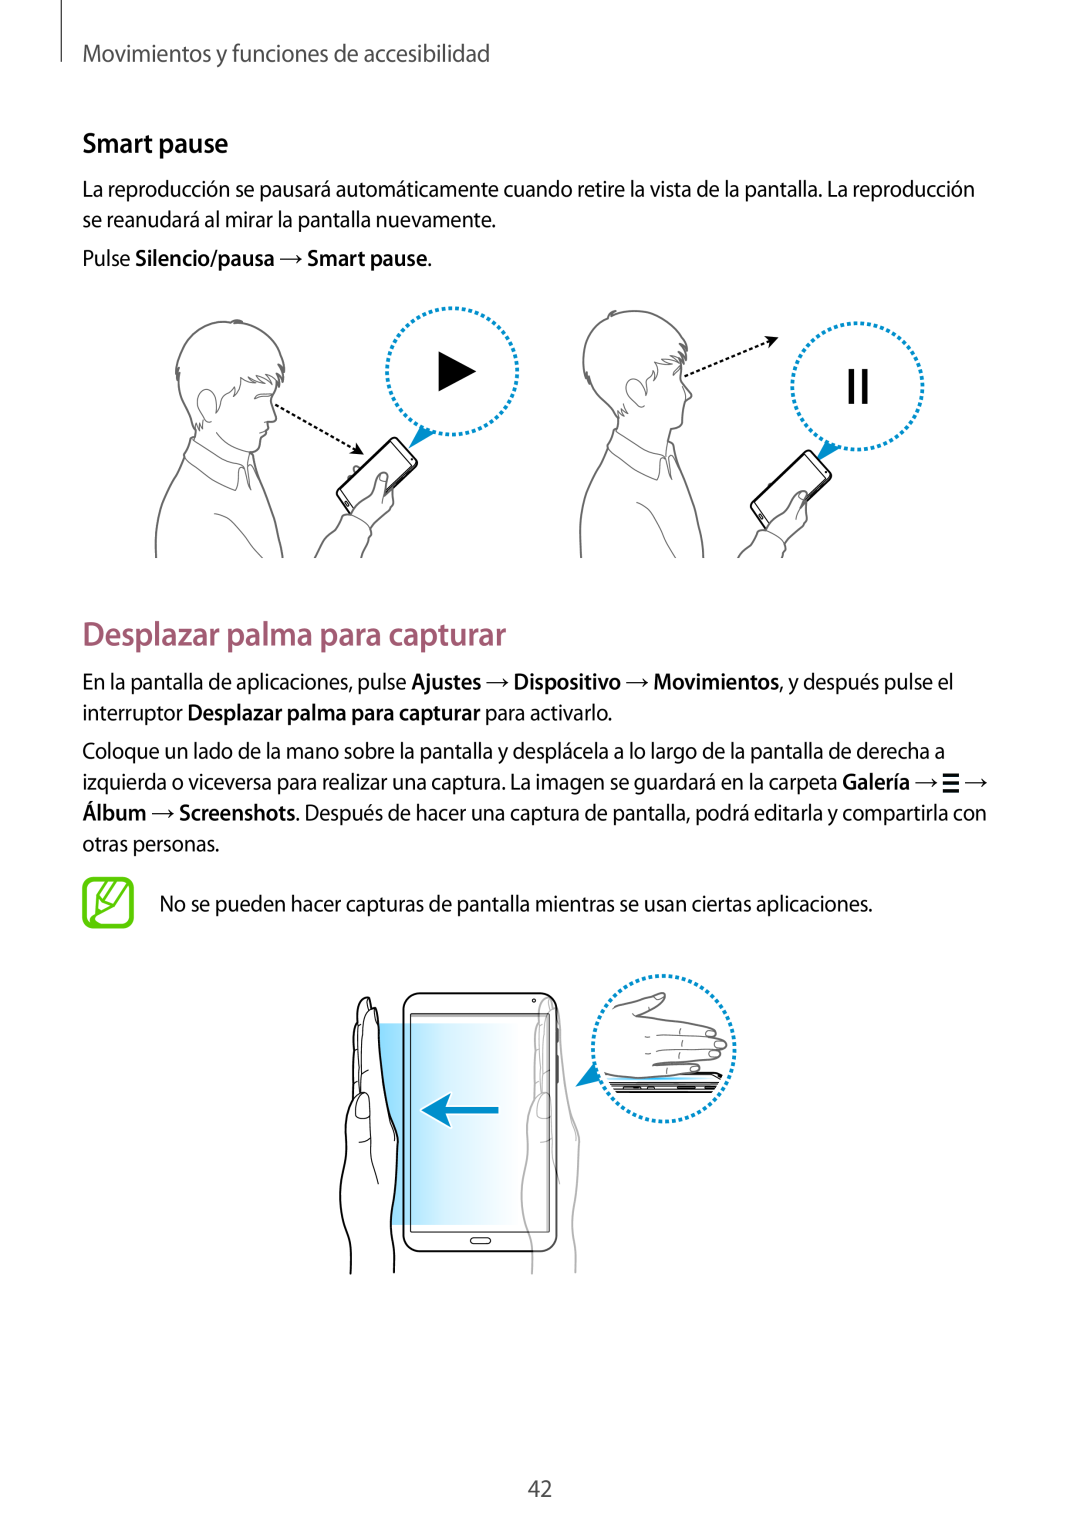 Samsung SM-T700NZWATPH manual Desplazar palma para capturar, Smart pause, Movimientos y funciones de accesibilidad 